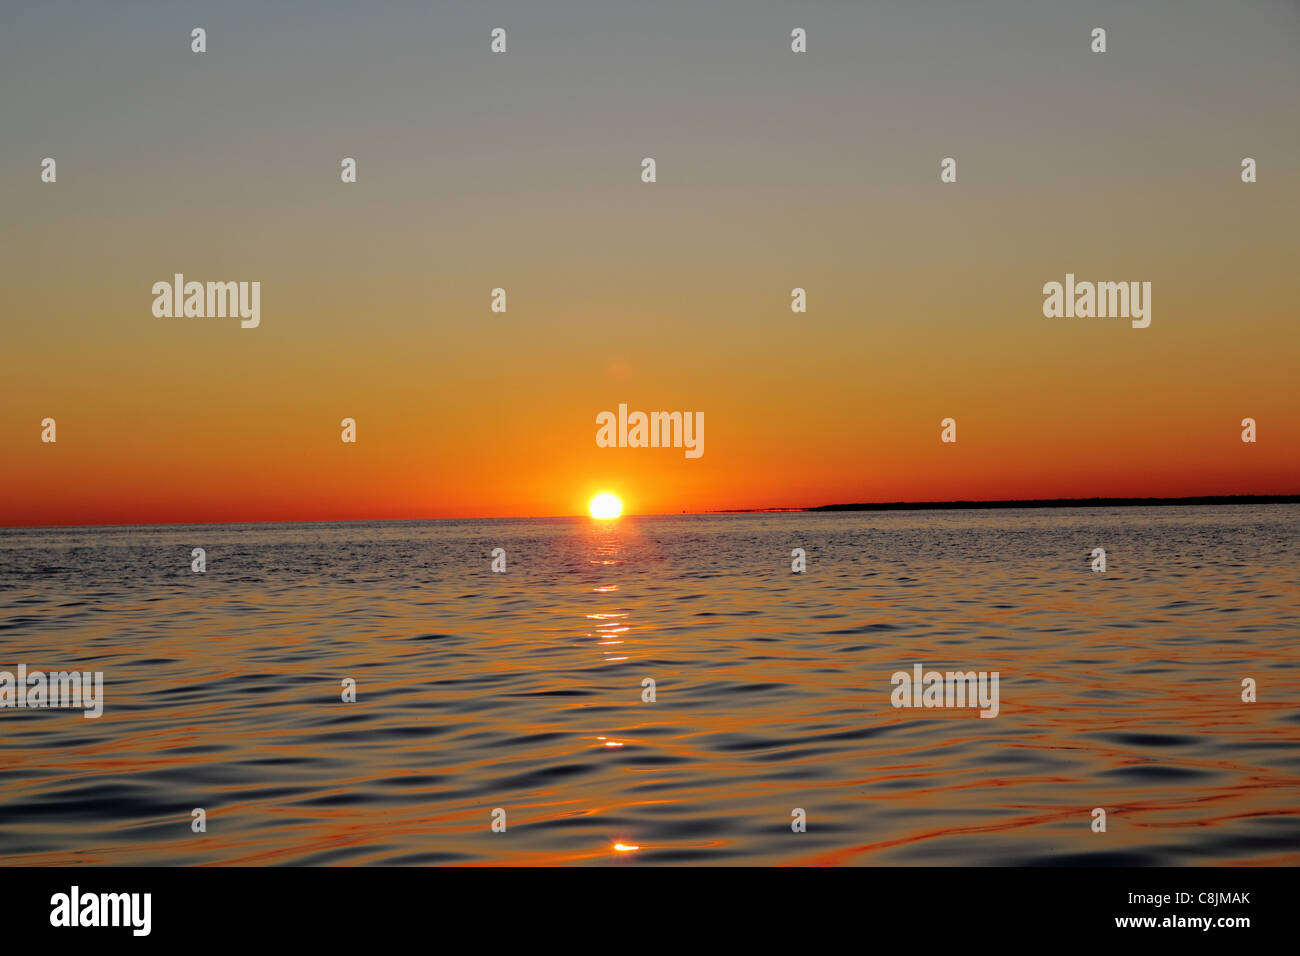 sunset on lake Stock Photo